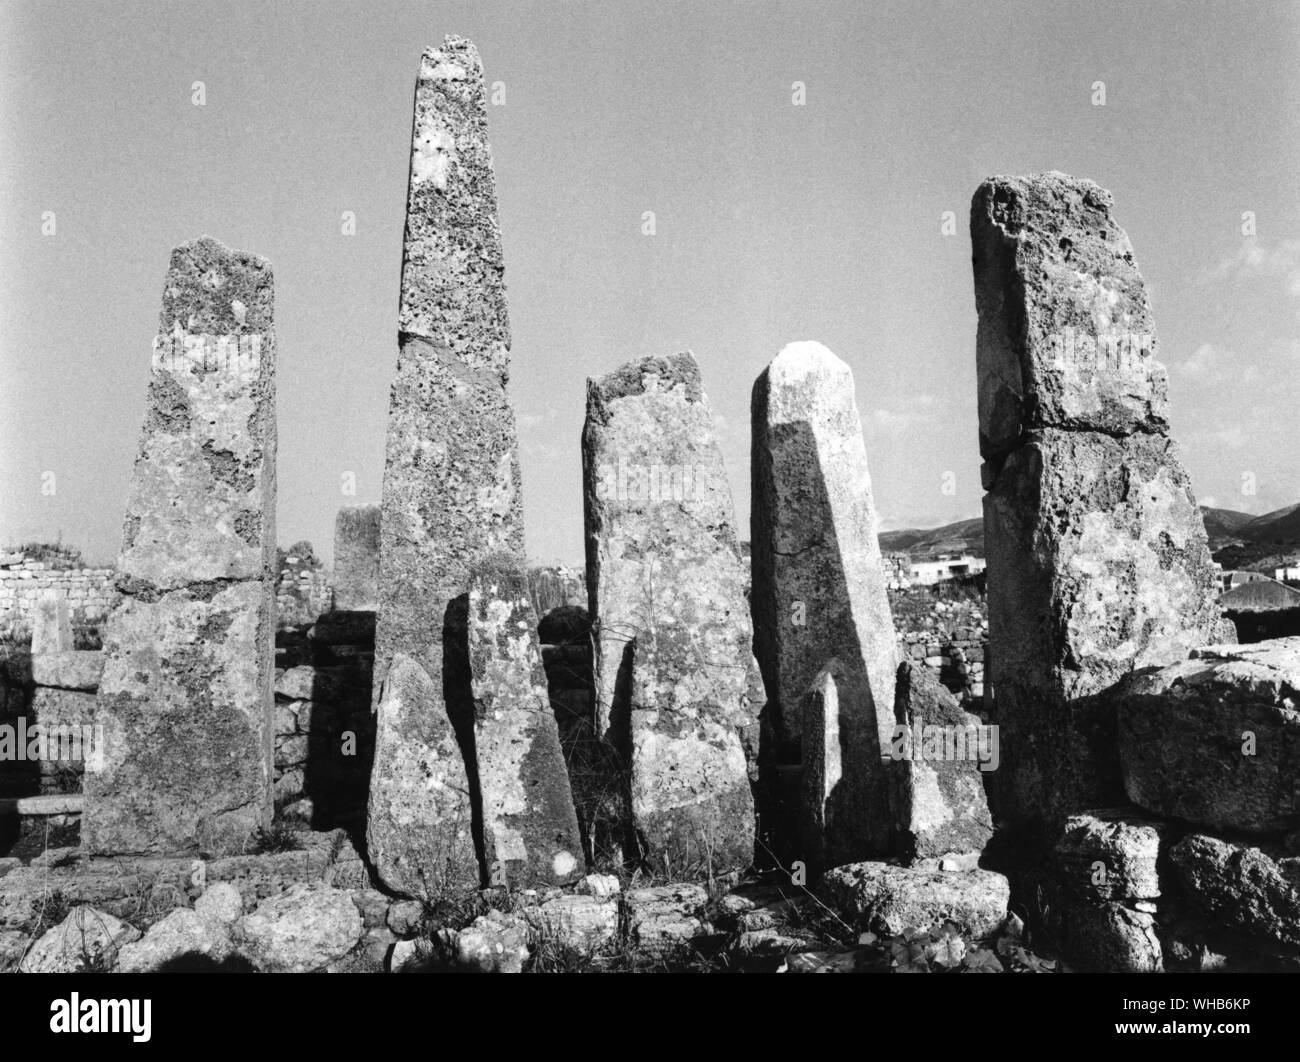 Byblos der phönizischen Tempel des Obelisken 2. Jahrtausend v. Chr. -. Byblos ist der griechische Name der phönizischen Stadt Gebal (früher Gubla). Es ist eine mediterrane Stadt auf dem Berge Libanon Governatorat des heutigen Libanon im Rahmen der aktuellen arabischen Namen von Jbeil. Nach Fragmenten zurückzuführen auf die semi-legendären vor dem Trojanischen Krieg phönizischen Historiker Sanchuniathon, es war die erste Stadt, die jemals gebaut wurde, und auch heute noch wird von vielen als die älteste kontinuierlich bewohnte Stadt der Welt zu sein. Stockfoto